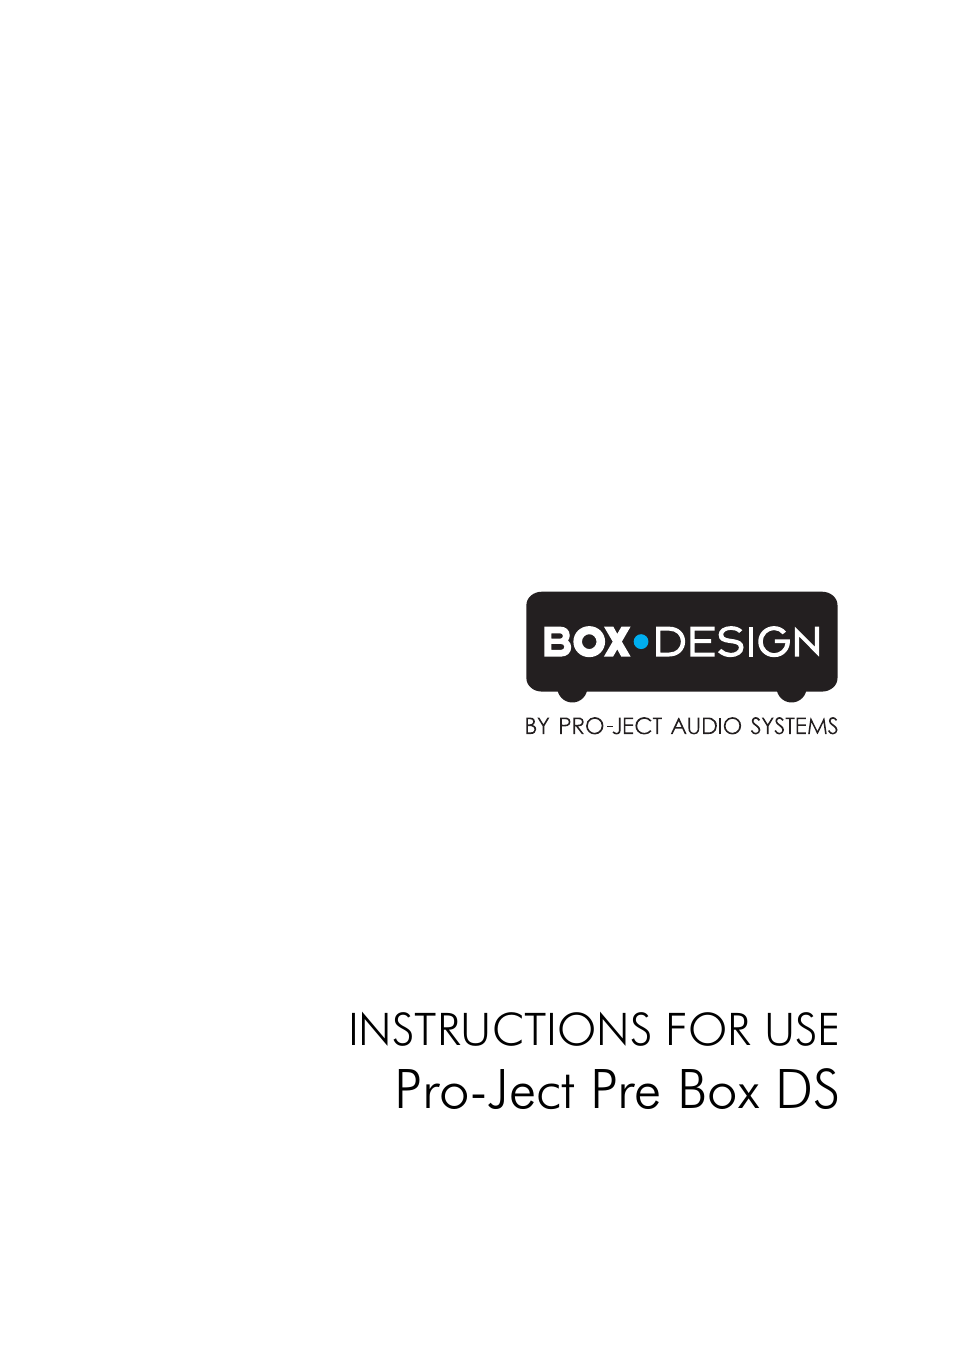 Pre Box DS